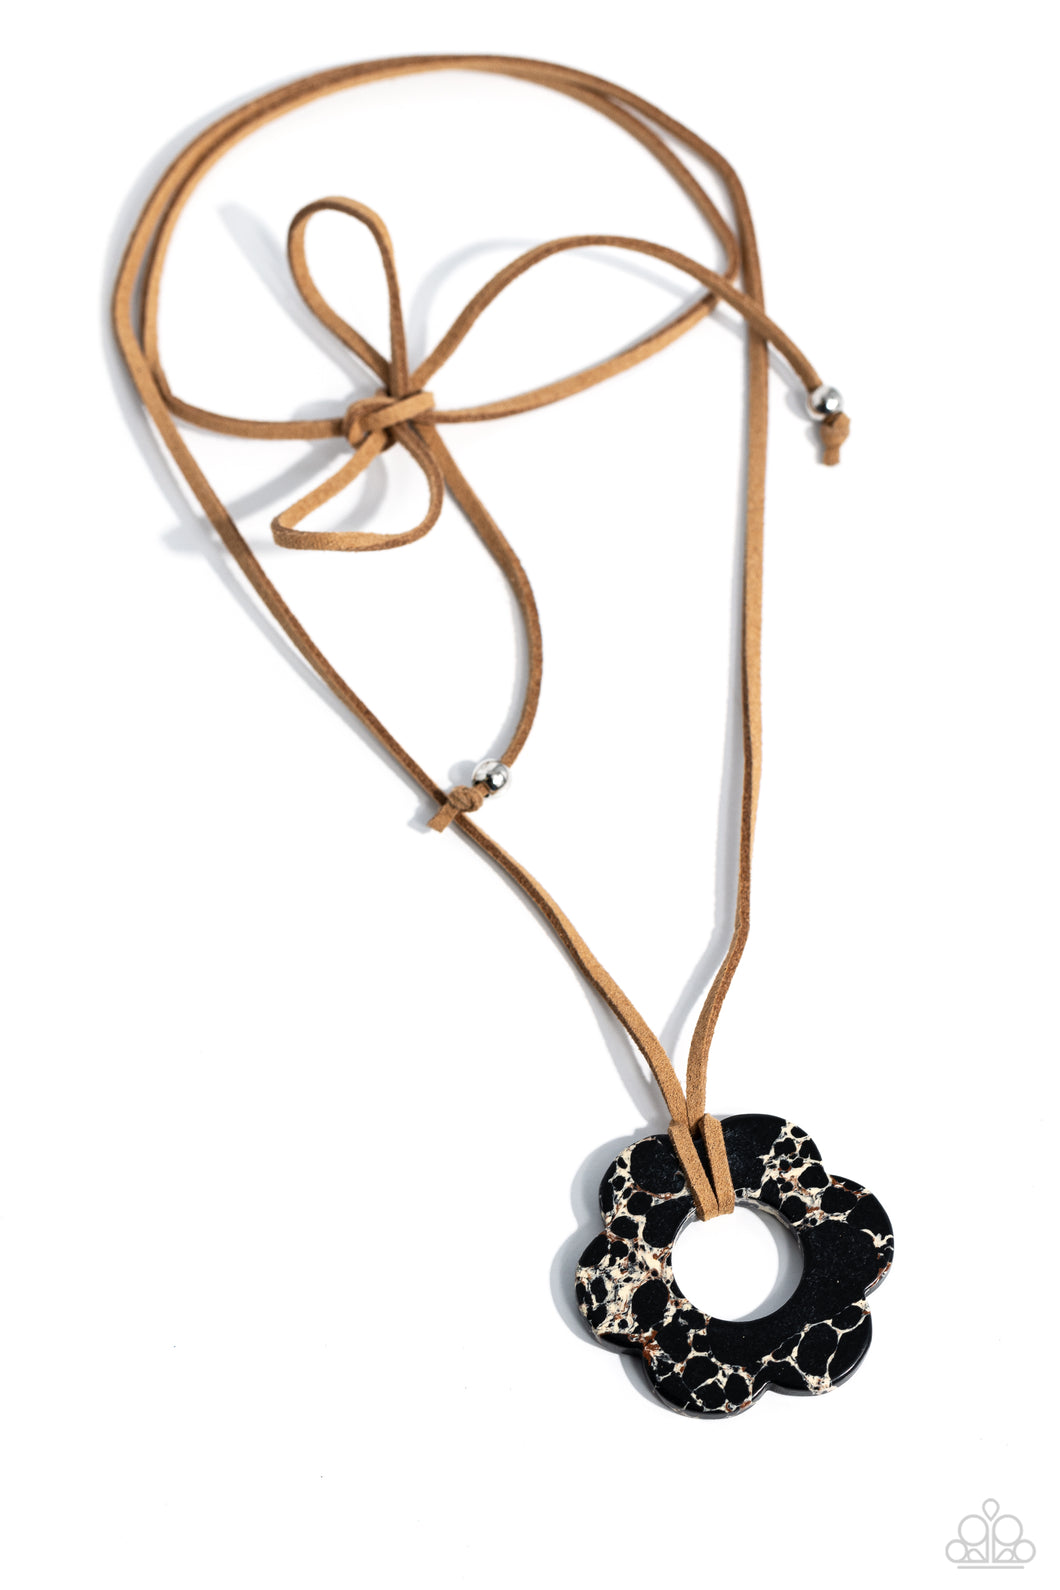 Tied Triumph - Black Necklace